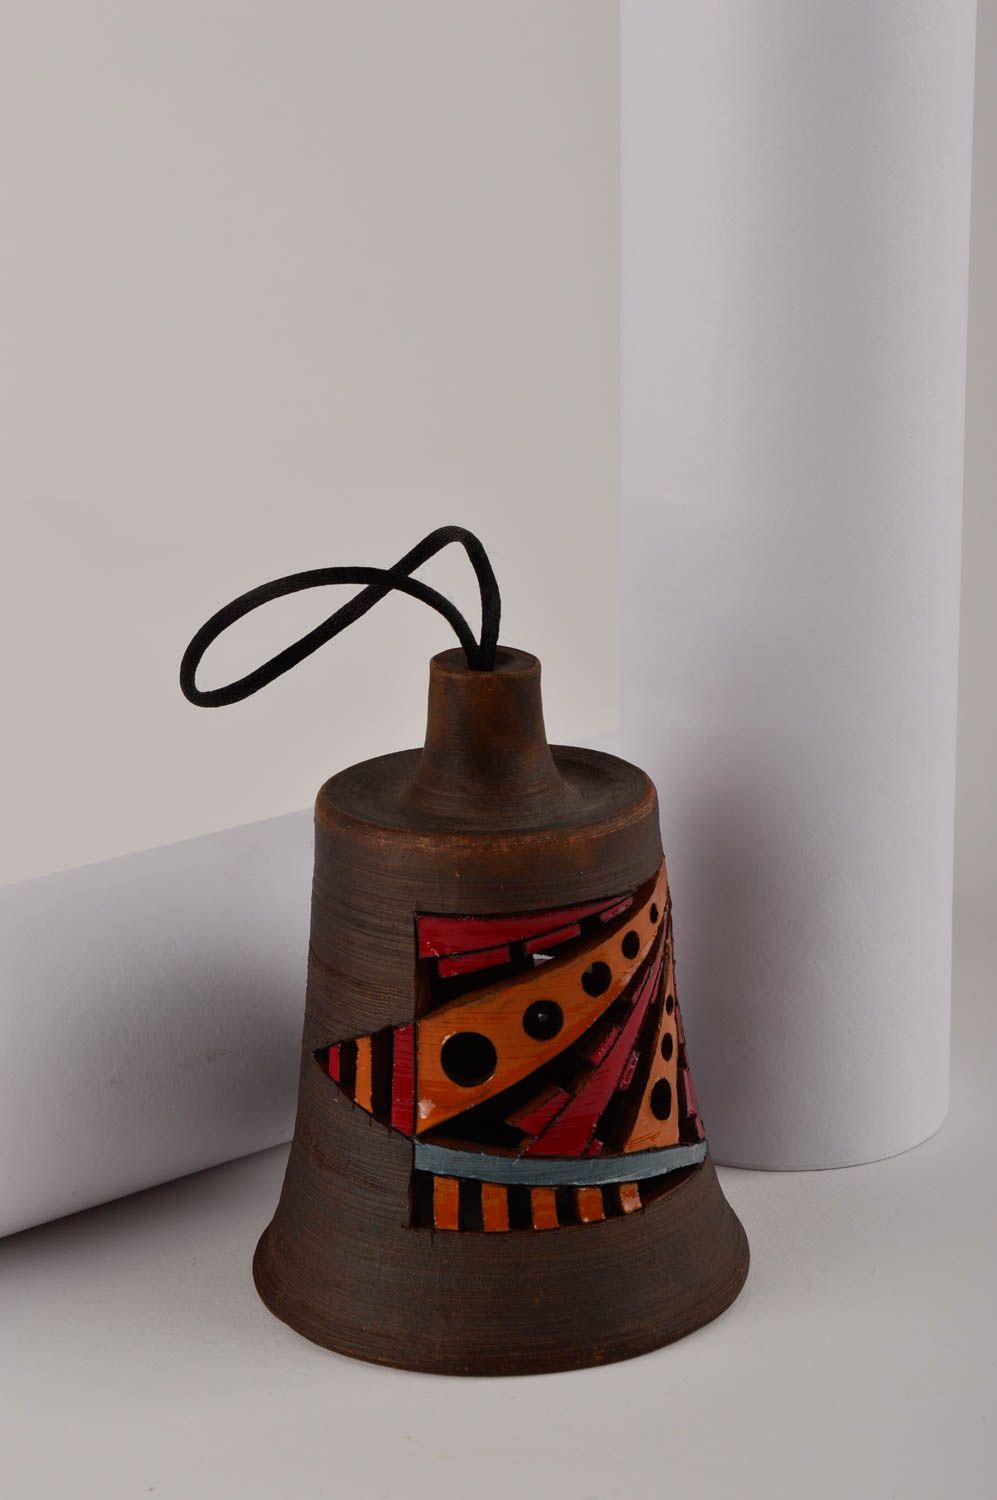 Homemade home decor ceramic bell souvenir ideas for decorative use only photo 1